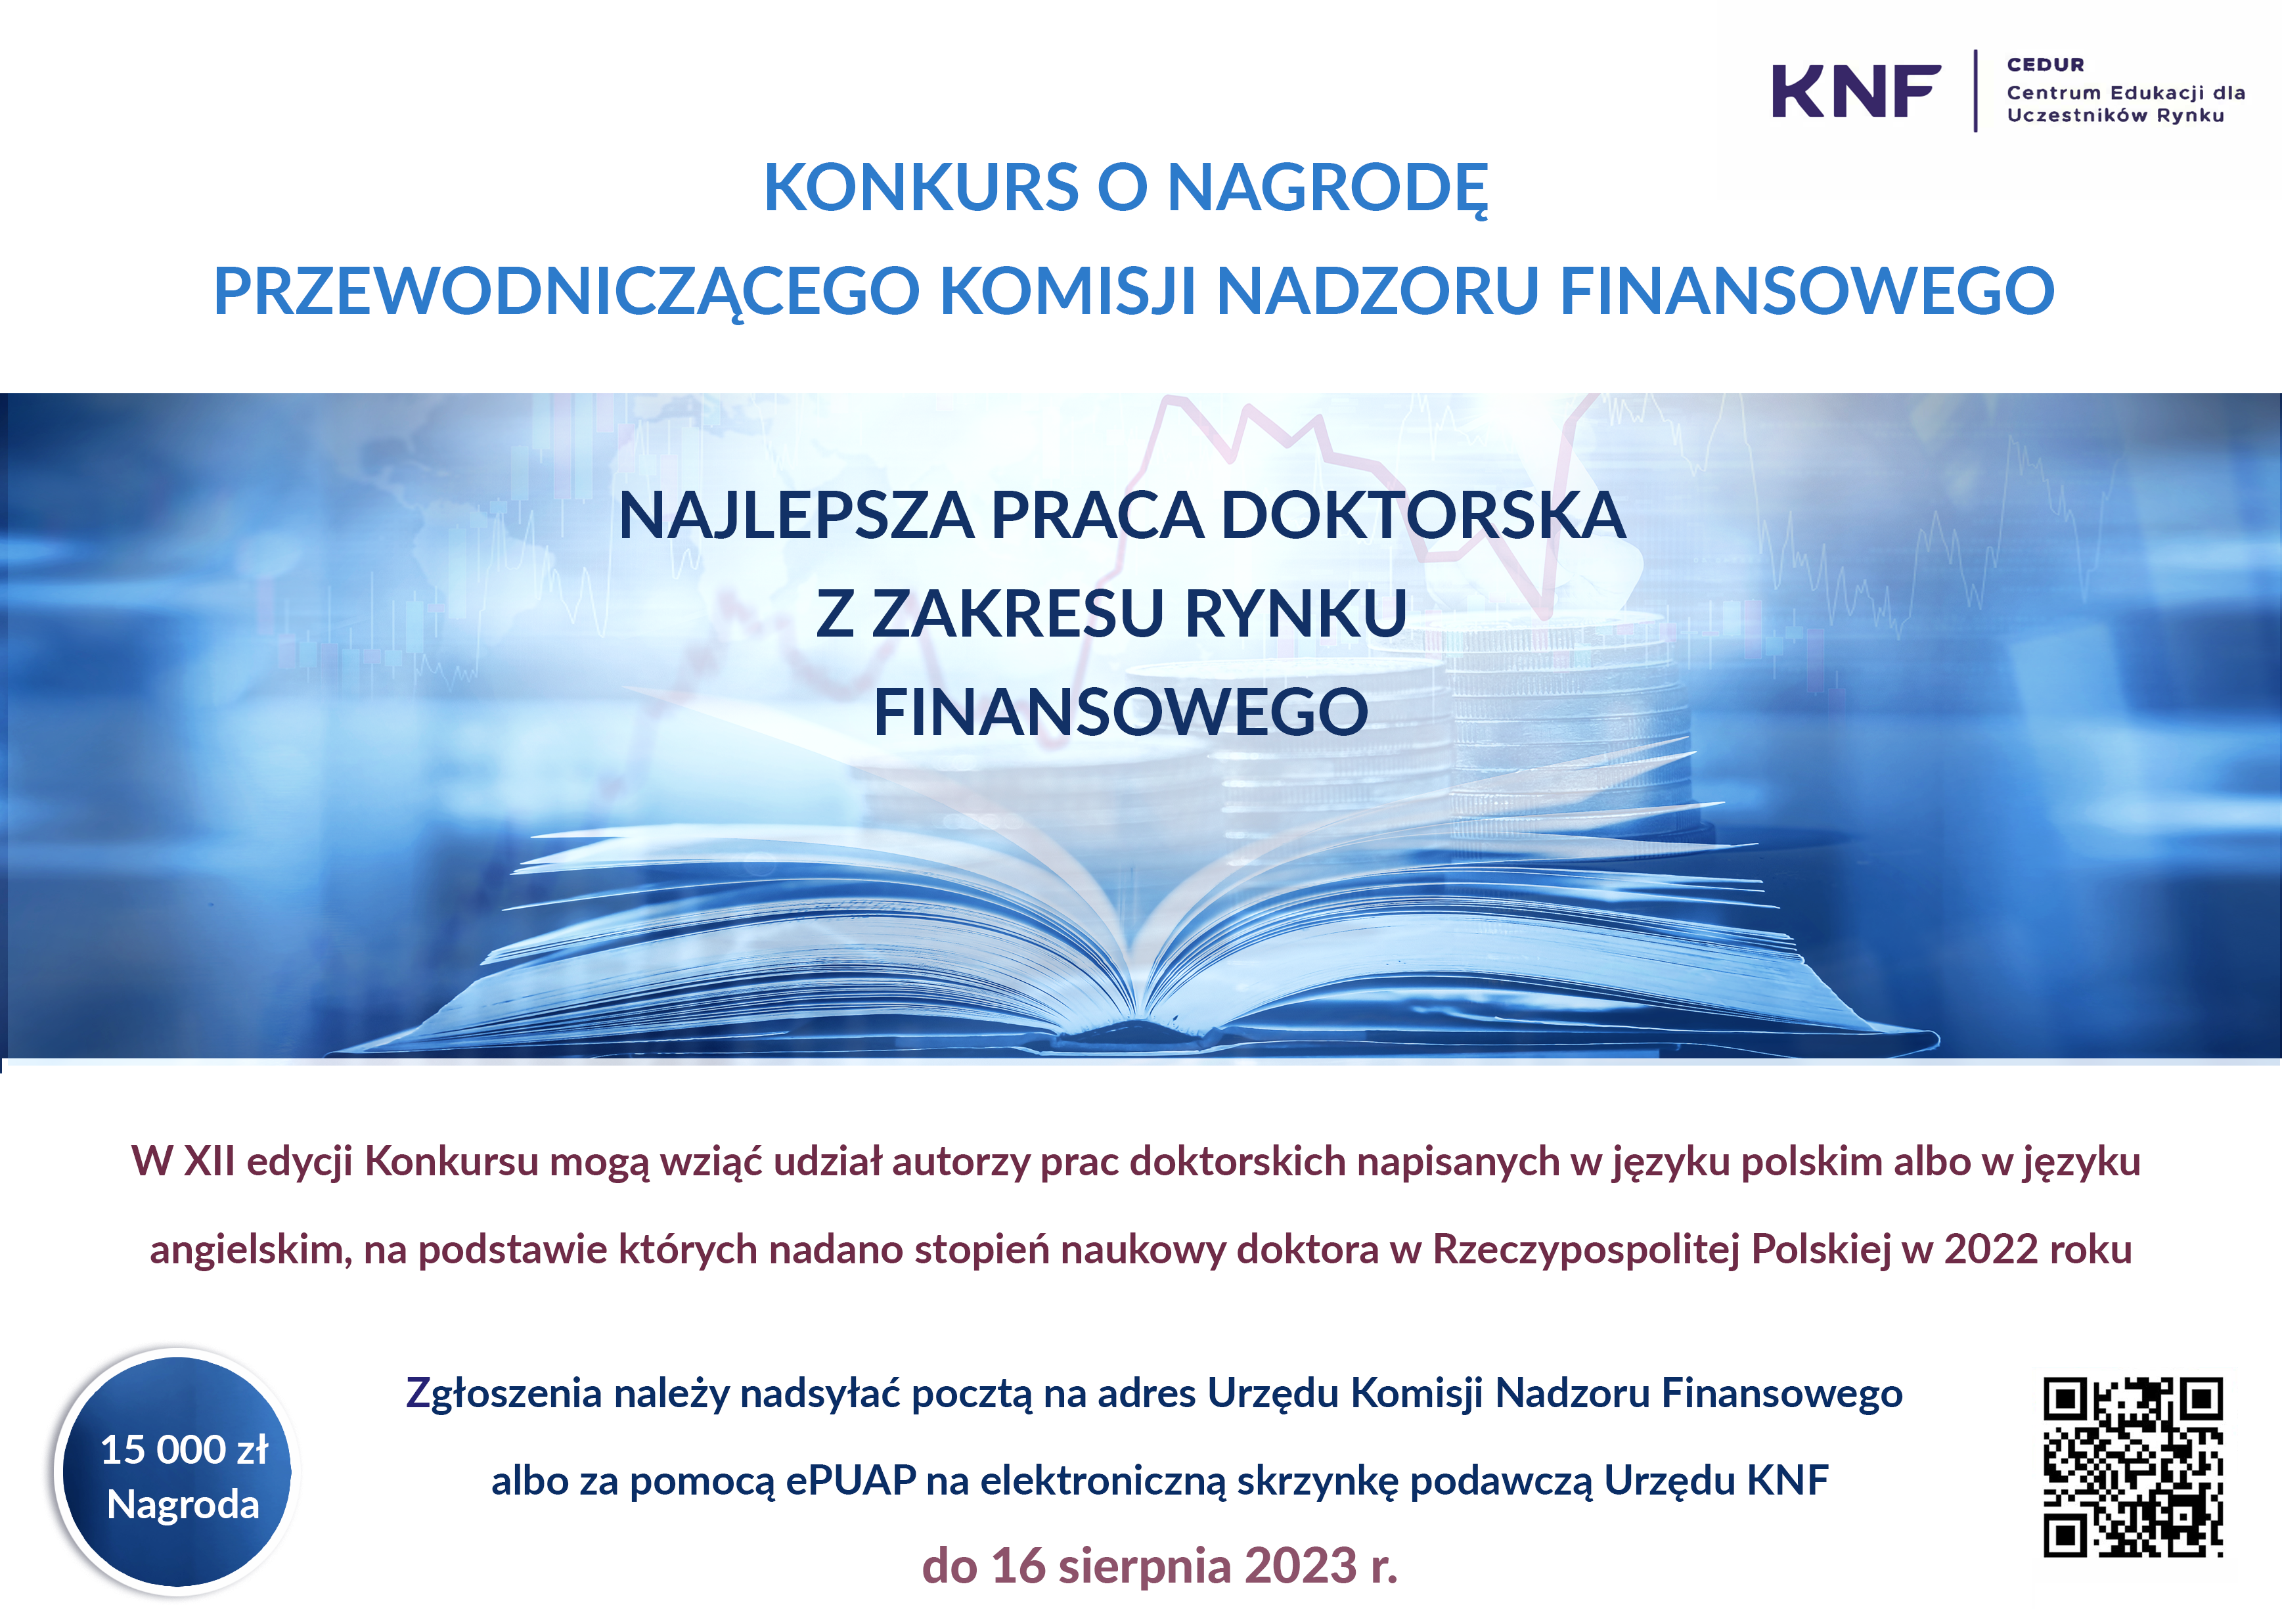 Urząd Komisji Nadzoru Finansowego informuje, że trwa XII edycja Konkursu o Nagrodę Przewodniczącego KNF za najlepszą pracę doktorską z zakresu rynku finansowego.